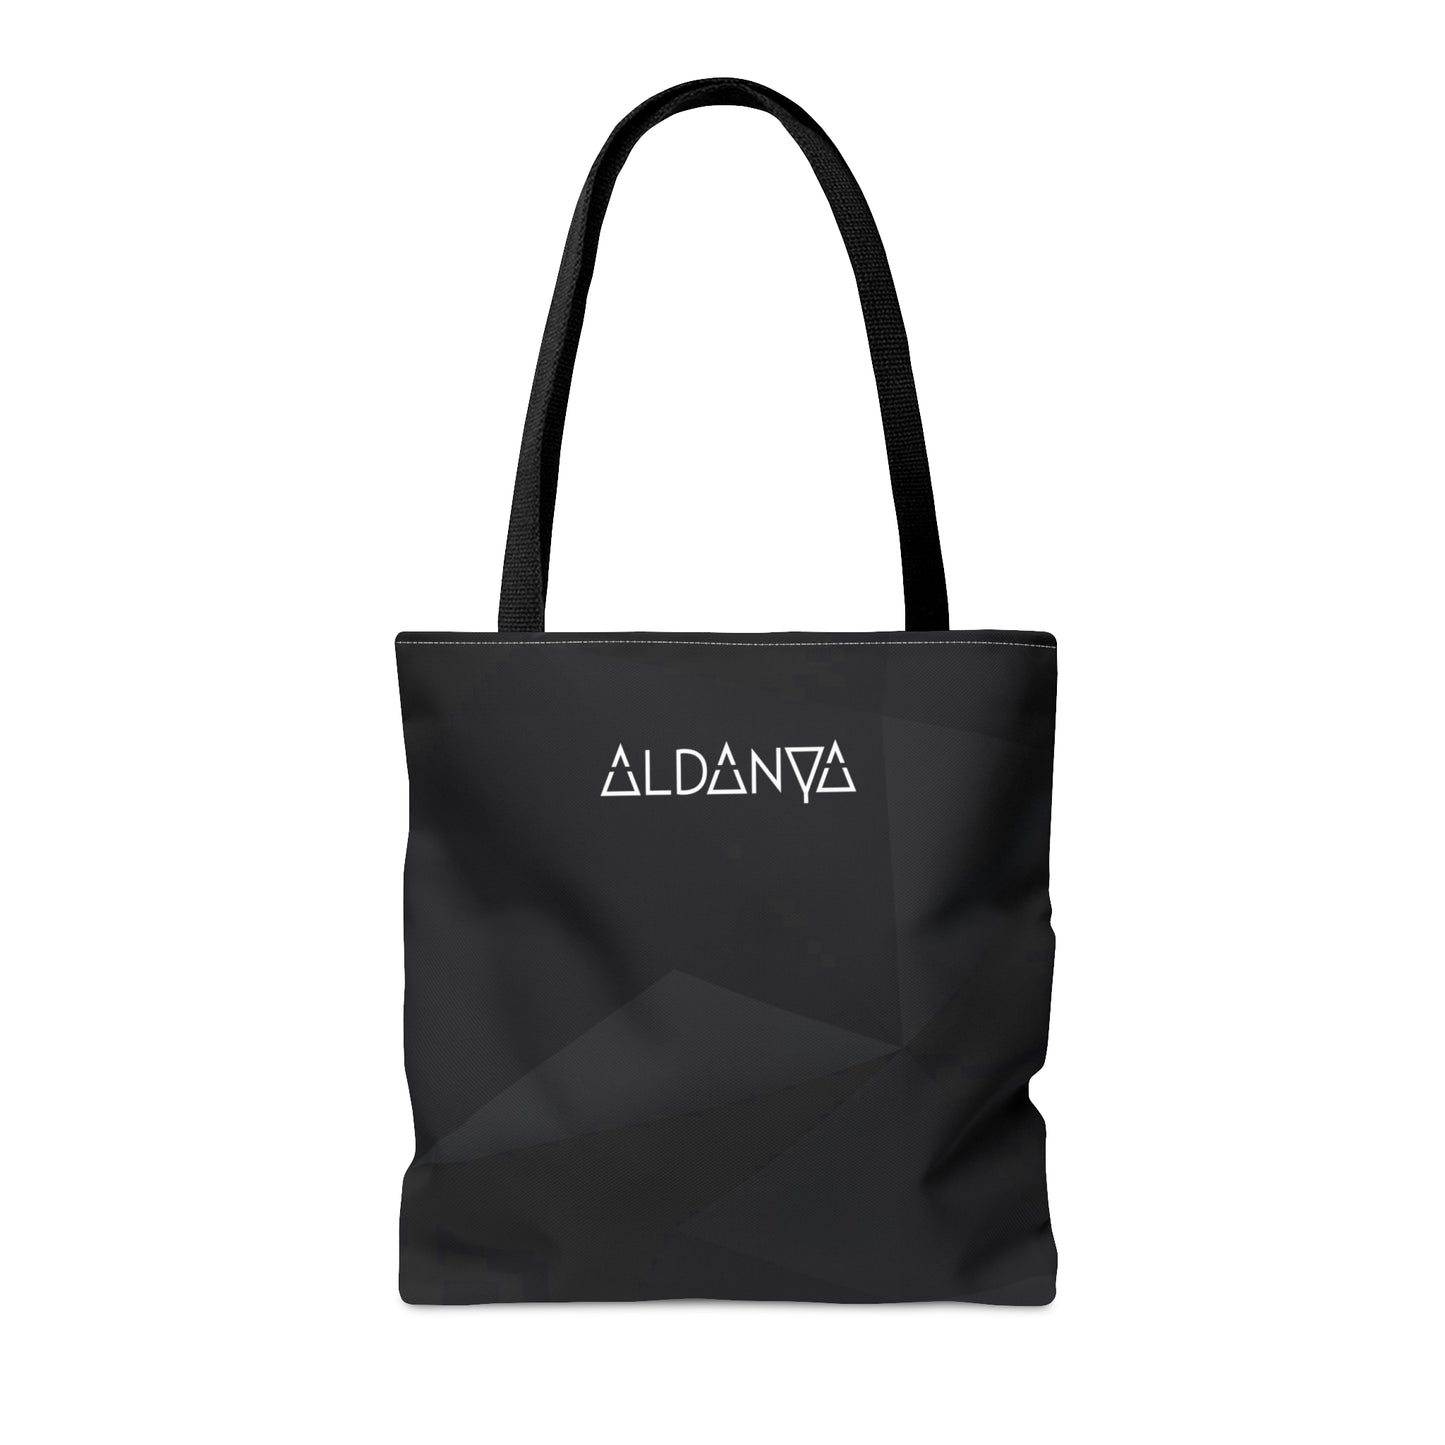 ALDANYA - Logo - AOP Tote Bag